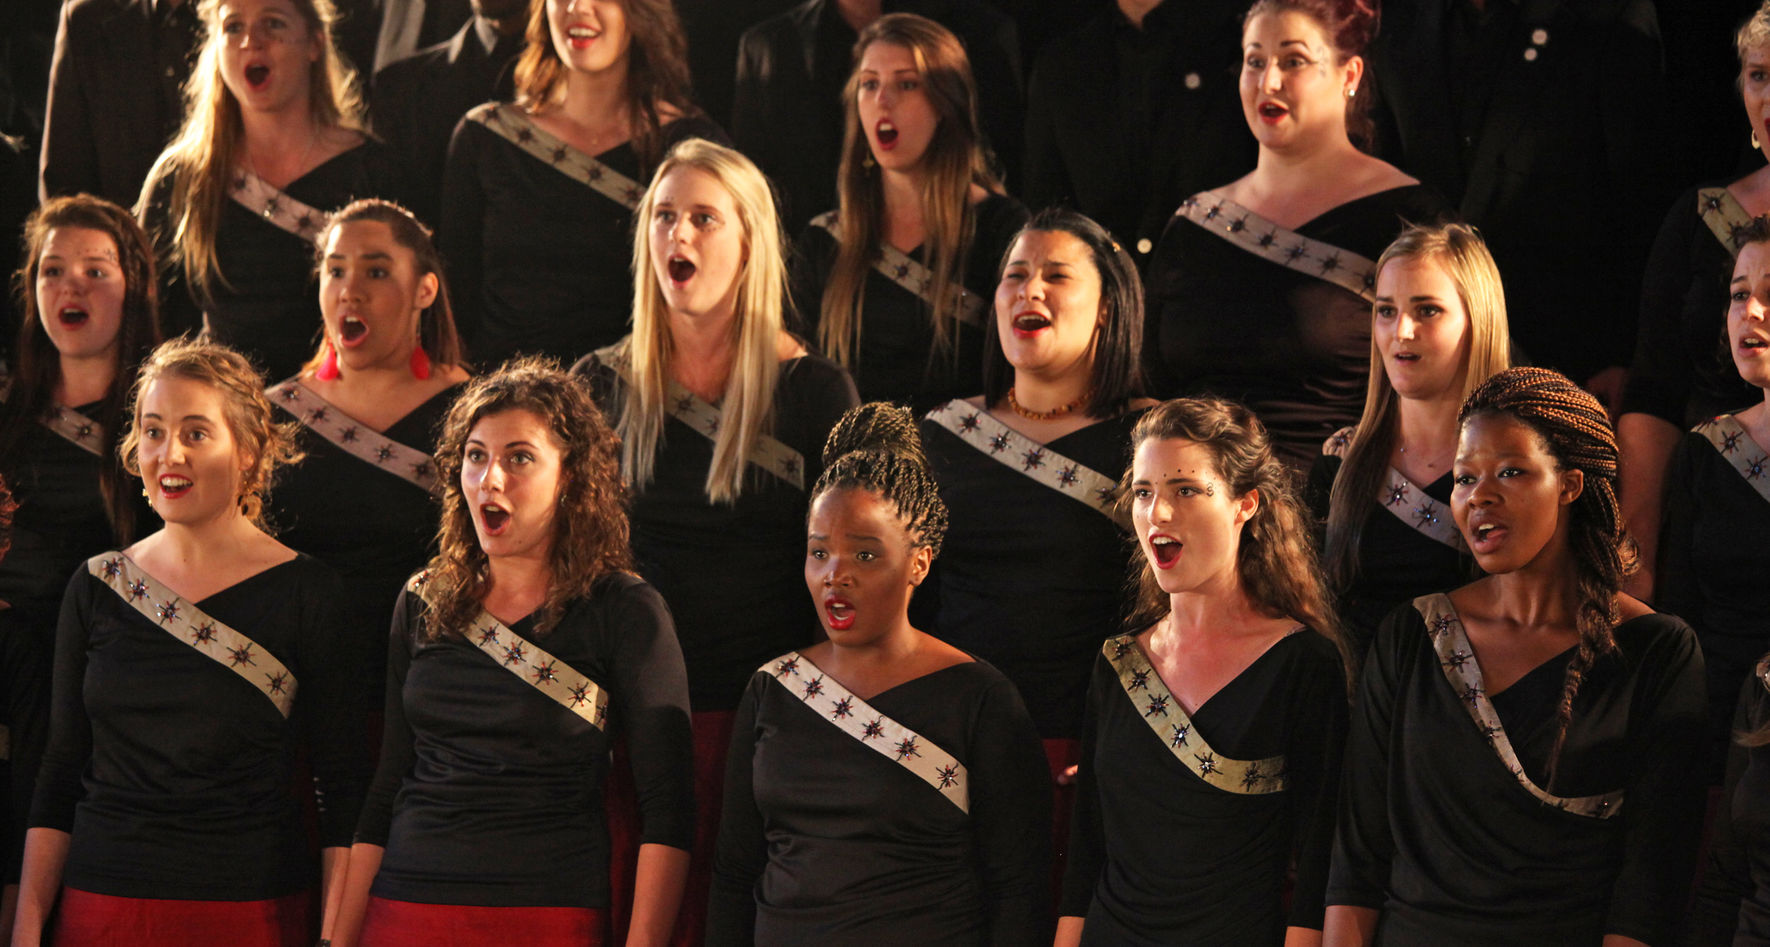 Stellenbosch University Choir